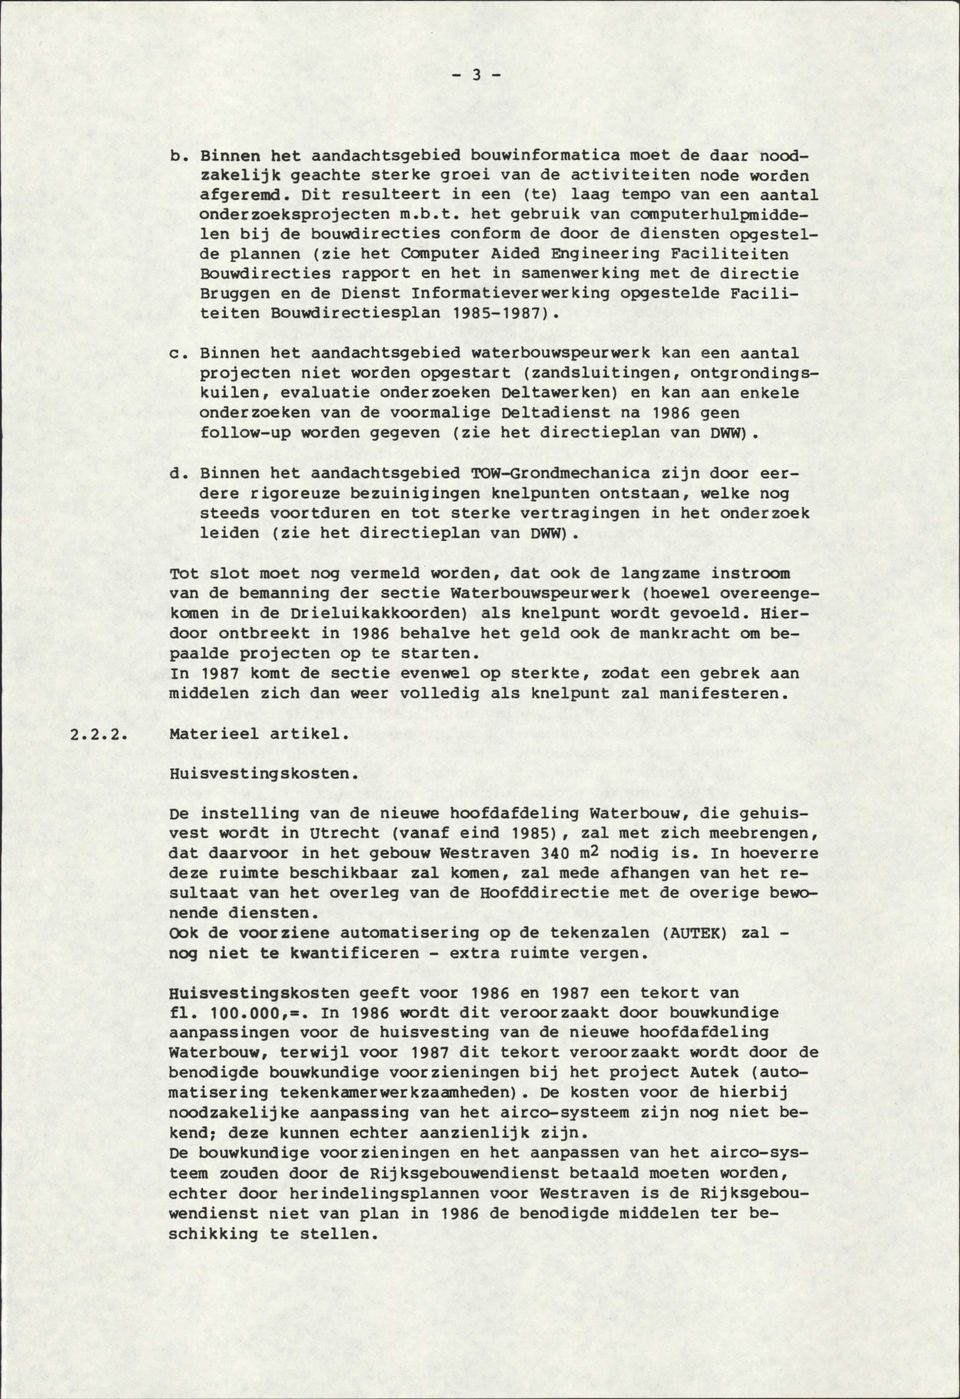 Computer Aided Engineering Faciliteiten Bouwdirecties rapport en het in samenwerking met de directie Bruggen en de Dienst Informatieverwerking opgestelde Faciliteiten Bouwdirectiesplan 1985-1987). c.